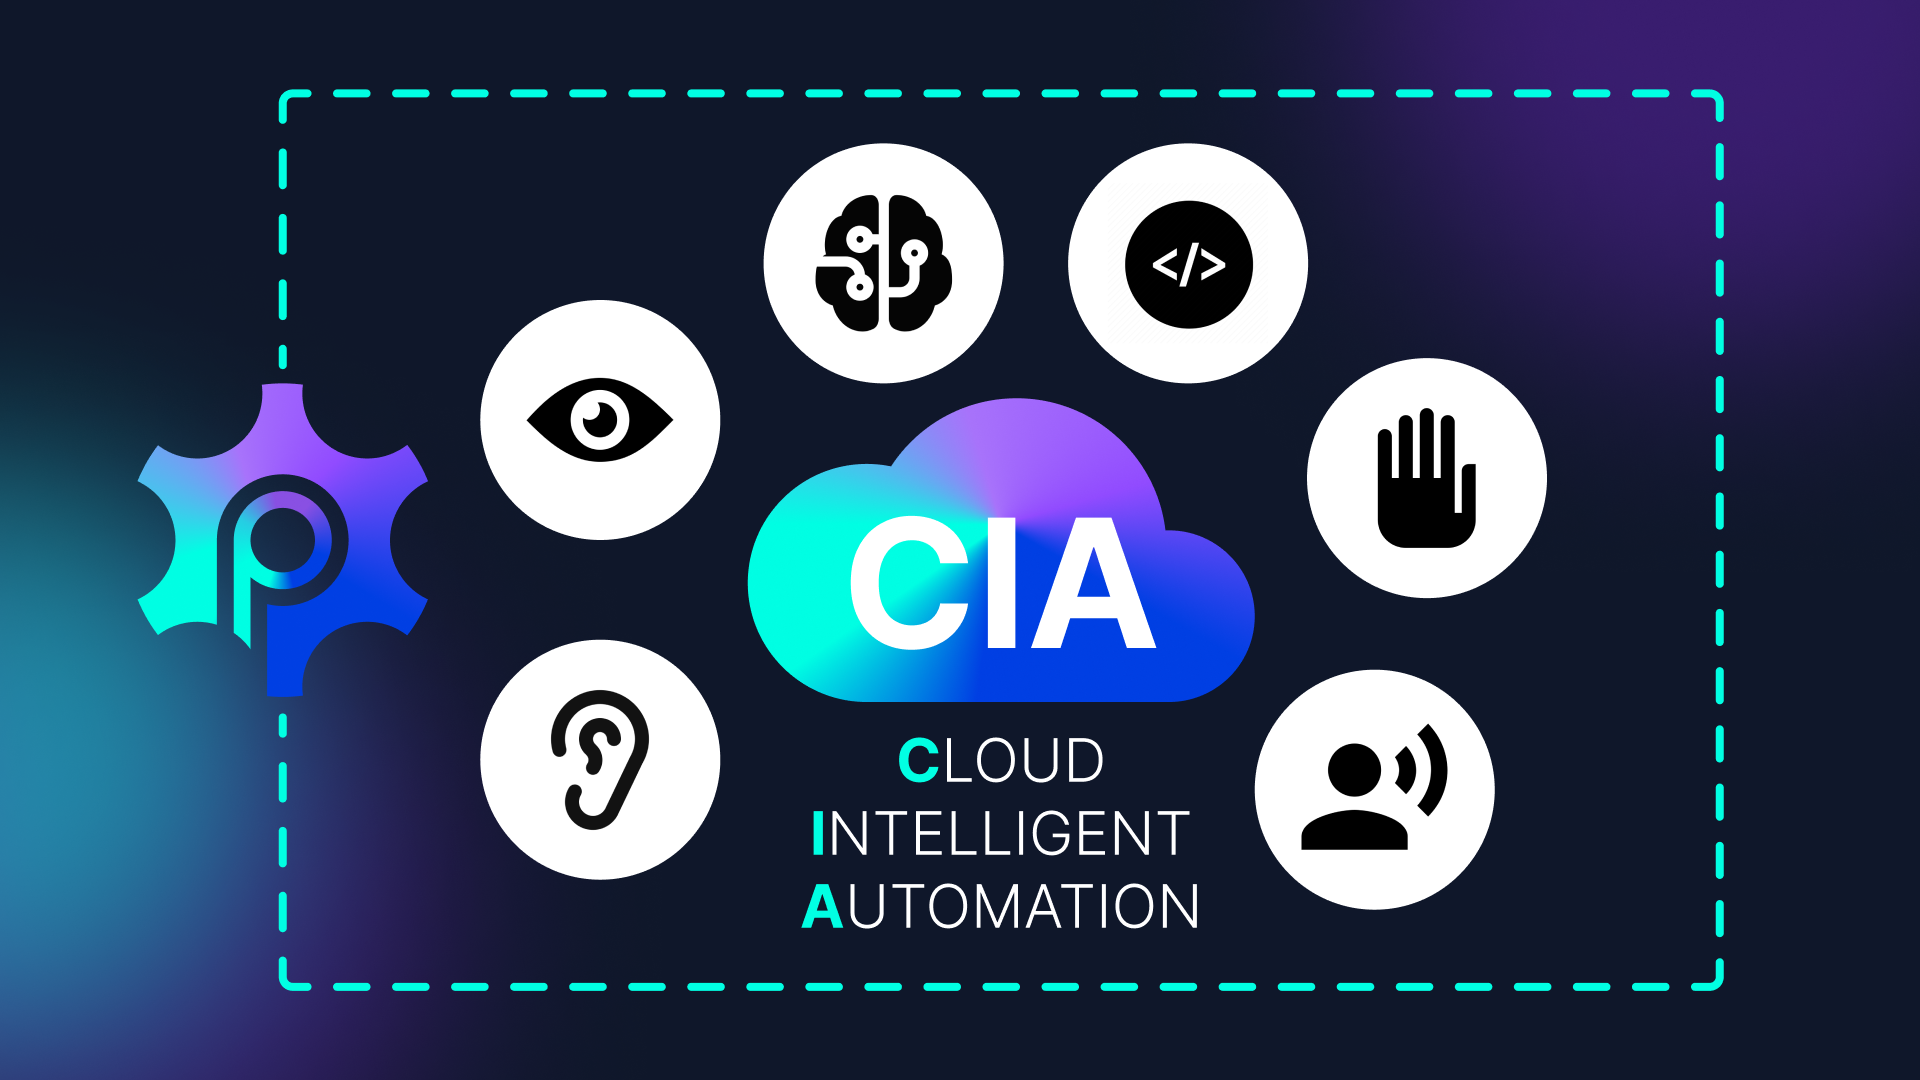 Cloud Intelligent Automation